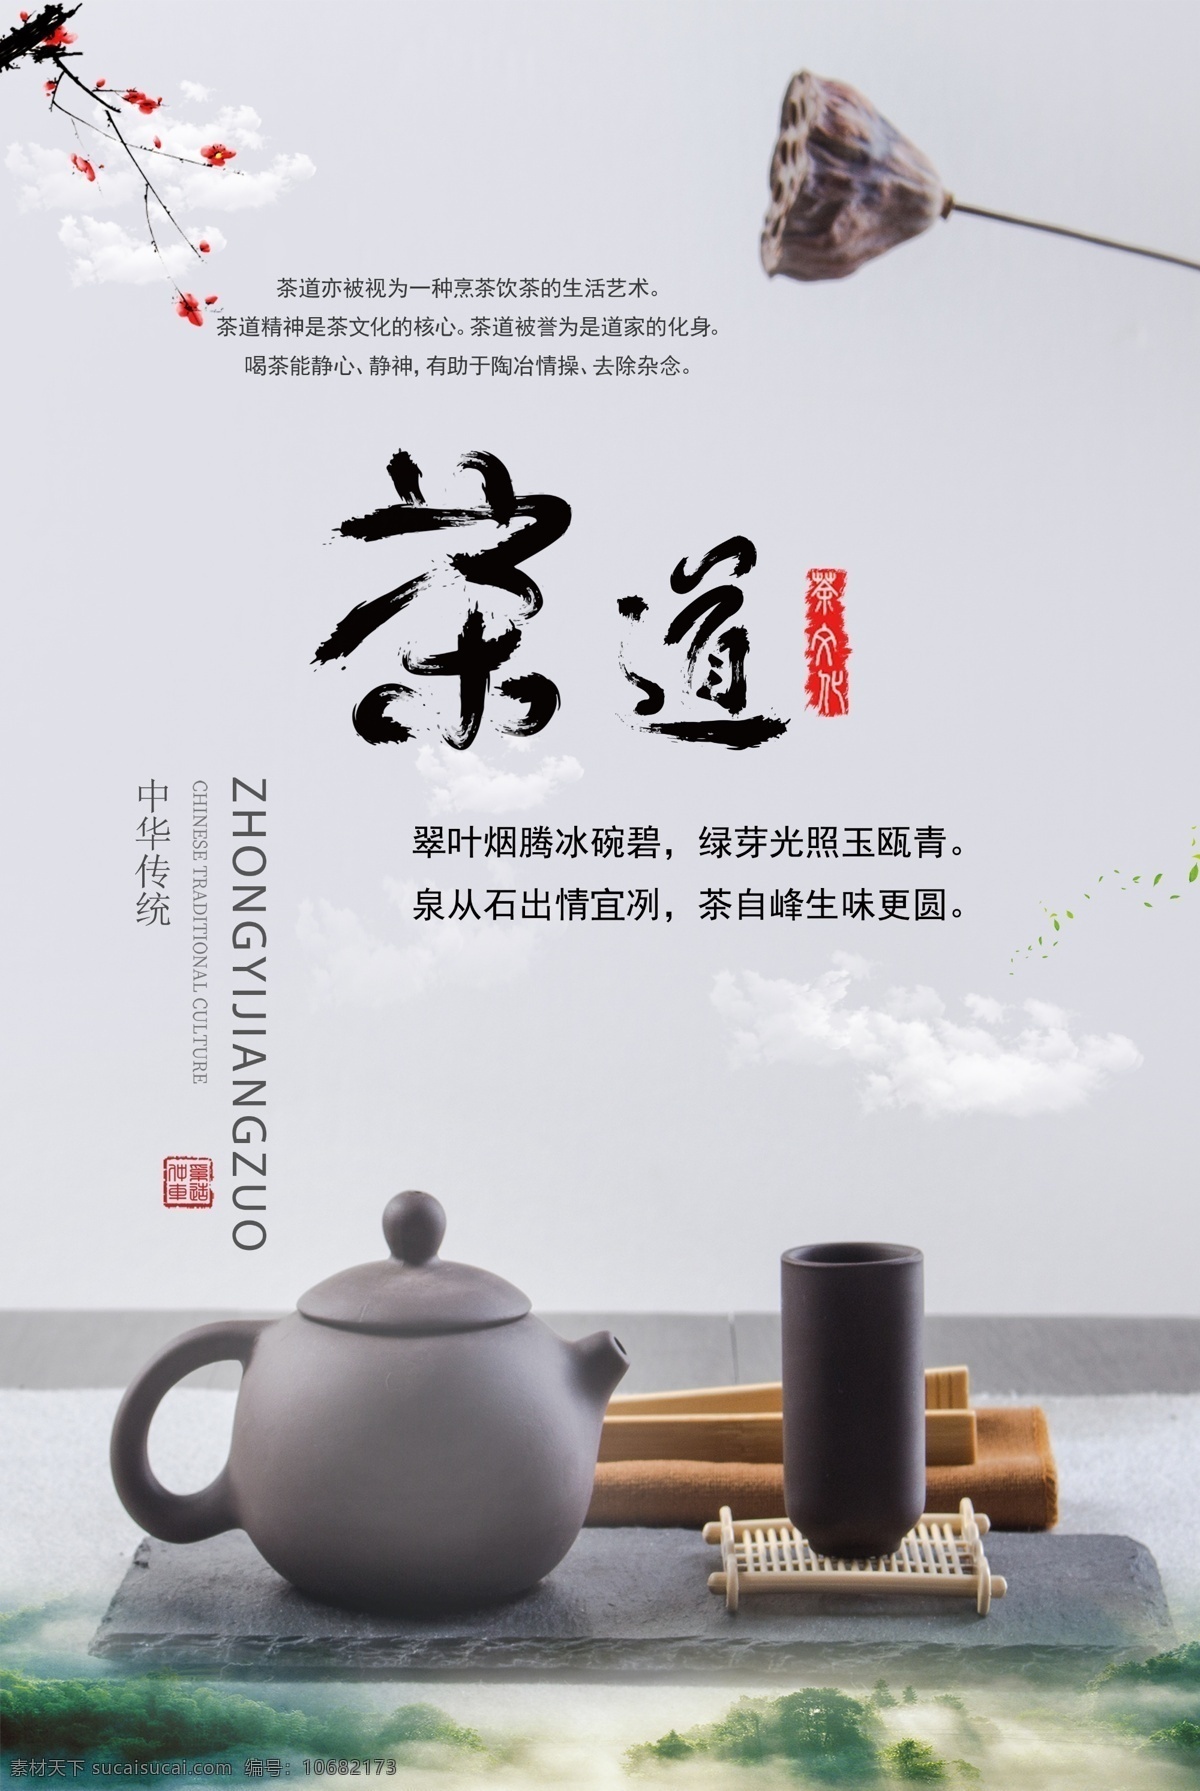 茶道 文化 海报 分层 中国茶文化 茶文化 中华文化 传统文化 茶艺 春暖茶香 人生如茶 茶道人生 品茶 茶馆 茶社 茶韵 茶香